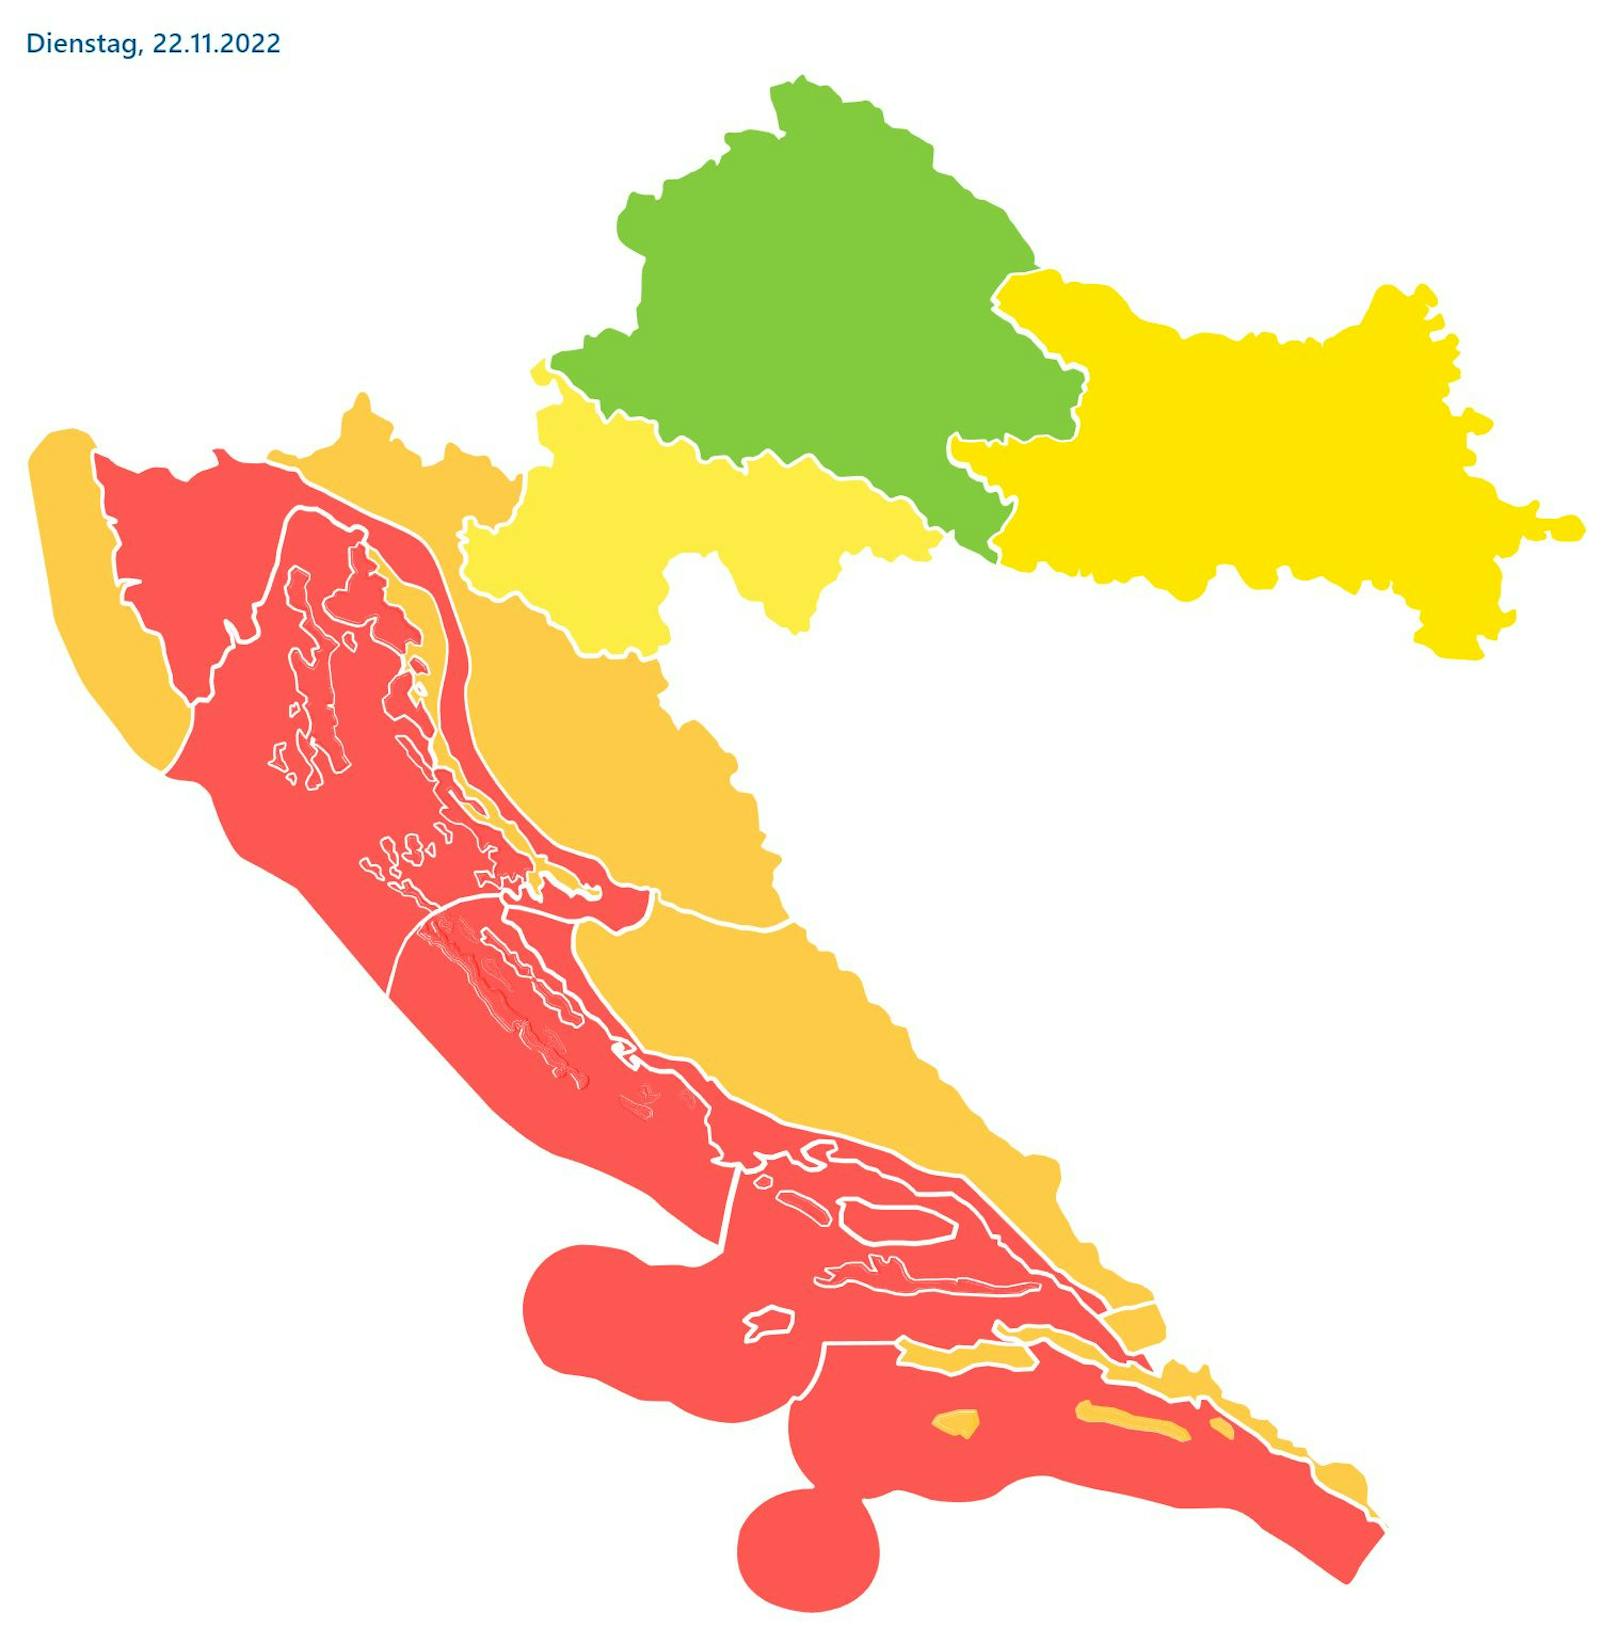 Beinahe entlang der gesamten kroatischen Adriaküste wurde für den 22. November eine rote Unwetterwarnung ausgegeben.